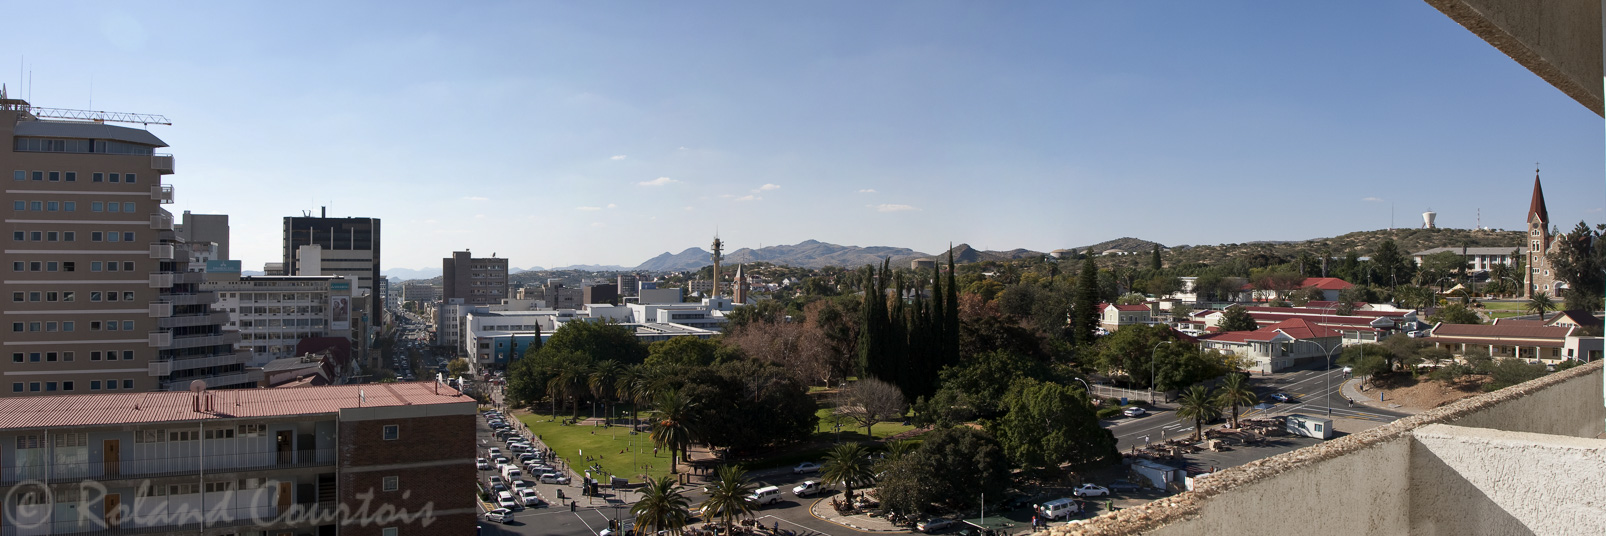 Le centre de la capitale, Windhoek.